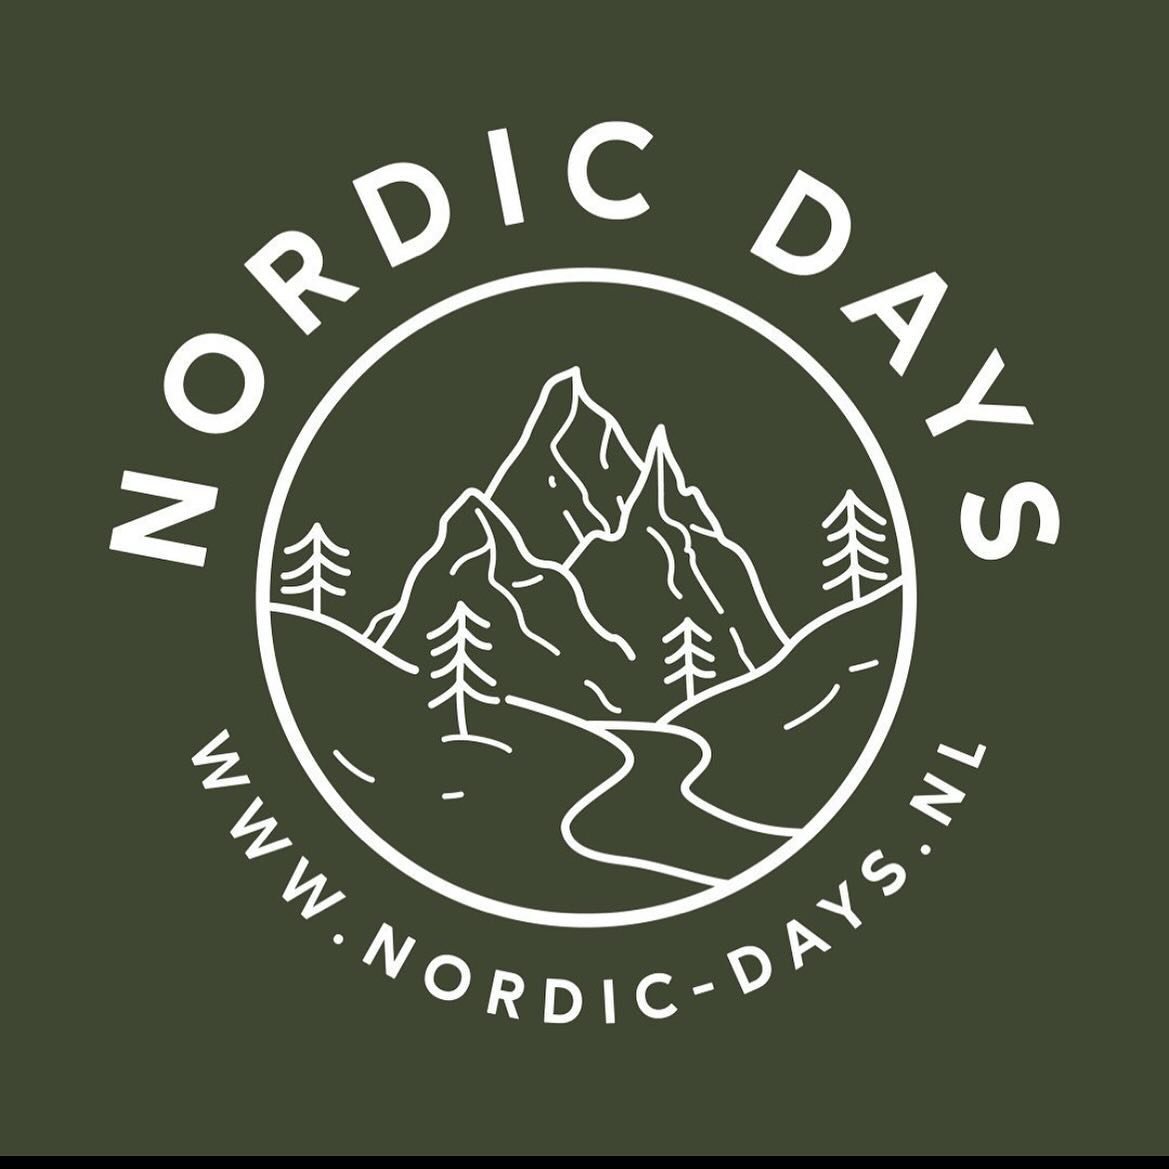 Het is zo ver! Met volle trots kunnen wij zeggen dat wij op de Scandinavische beurs @nordic_daysnl zullen staan 🌲

Vorig jaar zijn wij zelf naar de beurs geweest en hebben we de hele dag genoten van alle mooie bedrijven, sprekers en activiteiten. Di